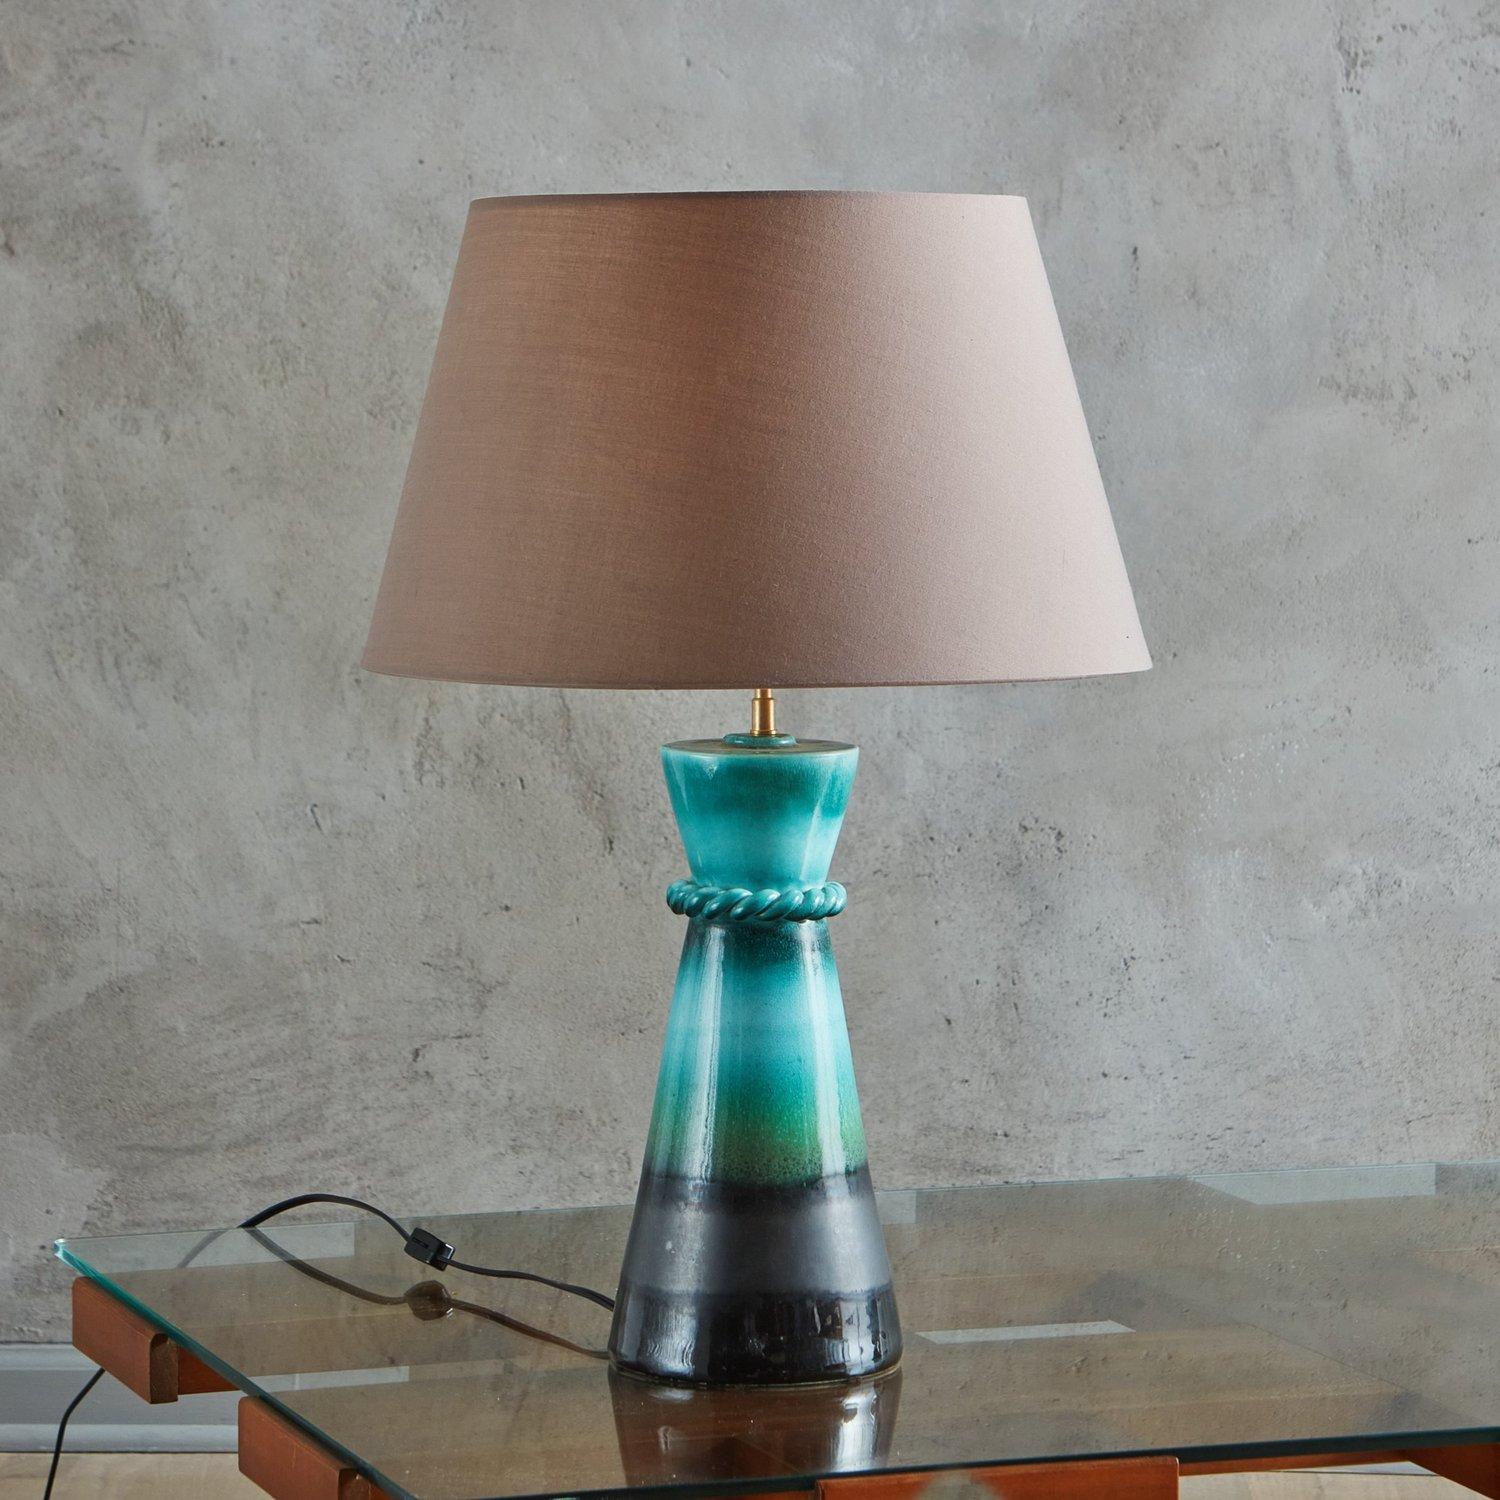 Eine französische Tischlampe aus den 1940er Jahren mit einem spitz zulaufenden, glasierten Keramiksockel in kräftigen Türkis-, Grün- und Schwarztönen. Diese Lampe hat eine dekorative geflochtene Verzierung und einen taupefarbenen Lampenschirm. Auf